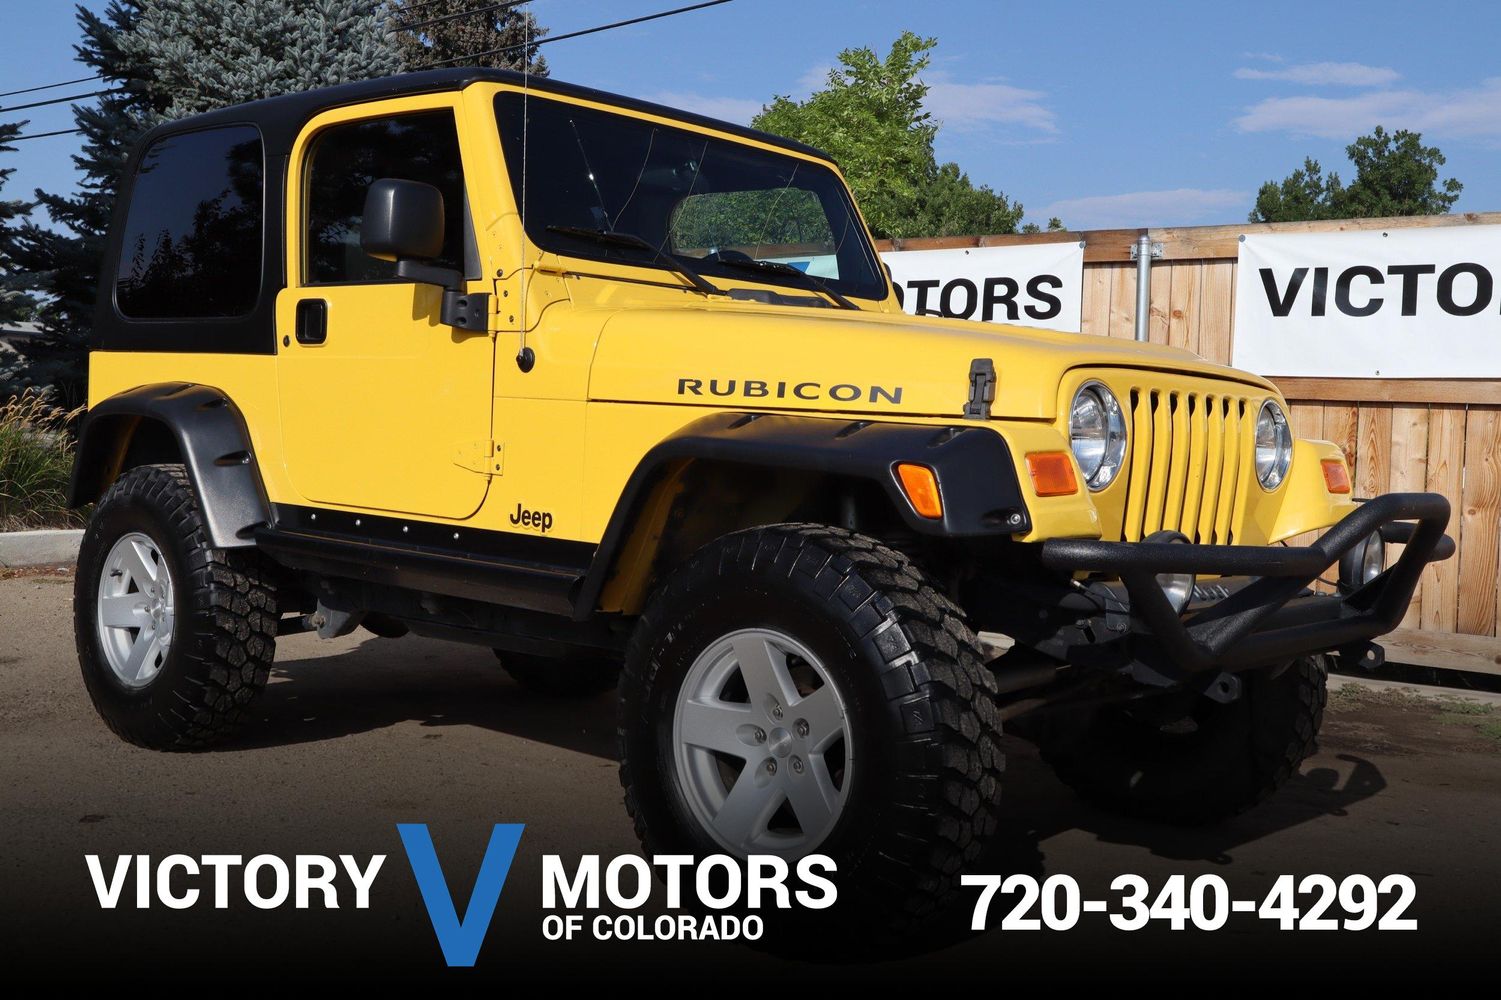 2006 Jeep Wrangler Rubicon | Victory Motors of Colorado